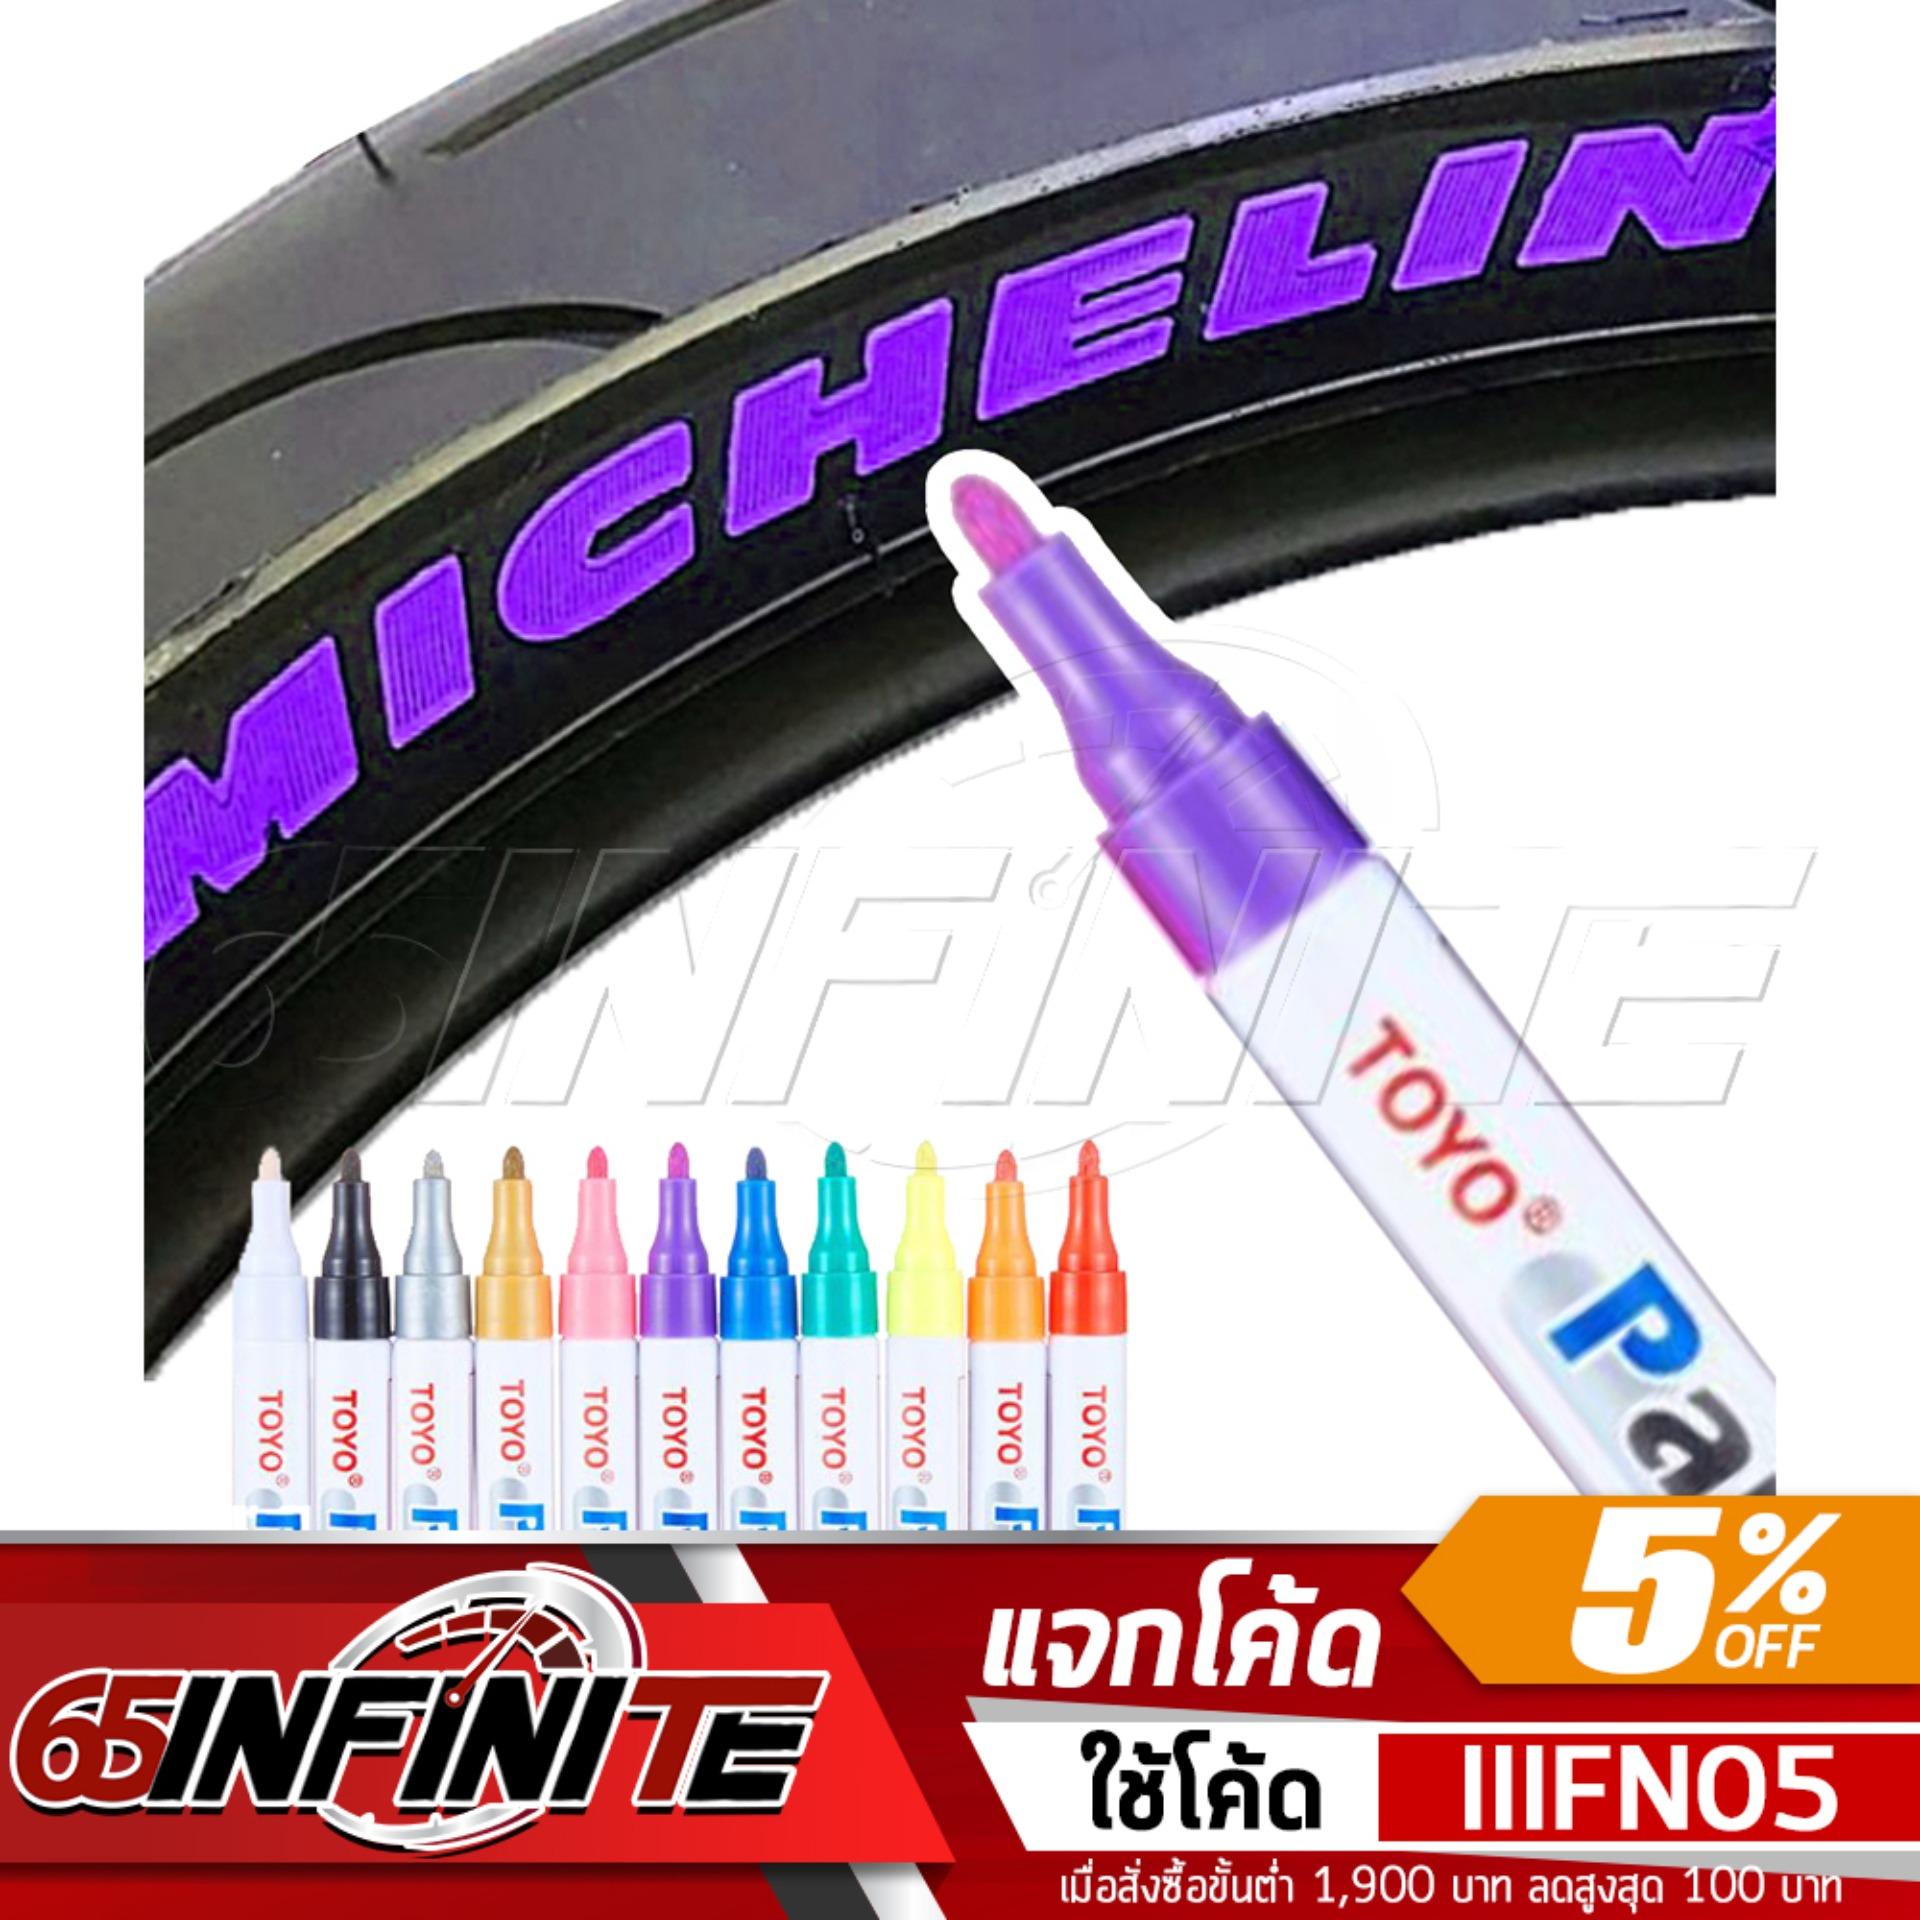 65Infinte TOYO Paint (สีม่วง) ปากกาเขียนยาง ปากกาเขียนล้อ แต้มแม็กซ์ ยางรถยนต์ ล้อรถยนต์ ของแท้จากญี่ปุ่น 100%